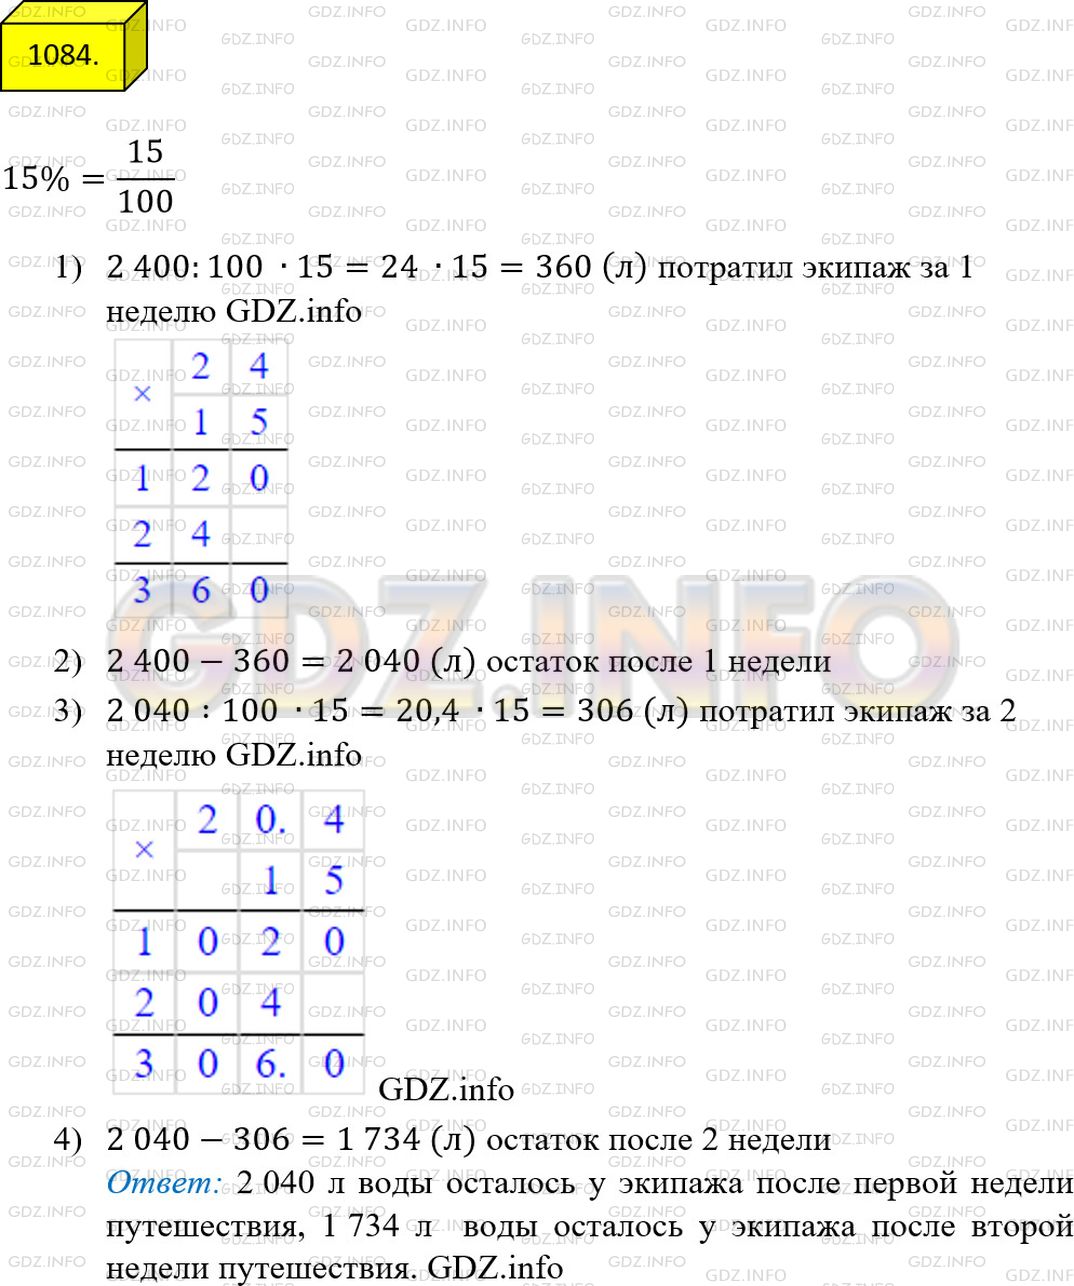 Фото решения 2: Номер №1084 из ГДЗ по Математике 5 класс: Мерзляк А.Г. г.